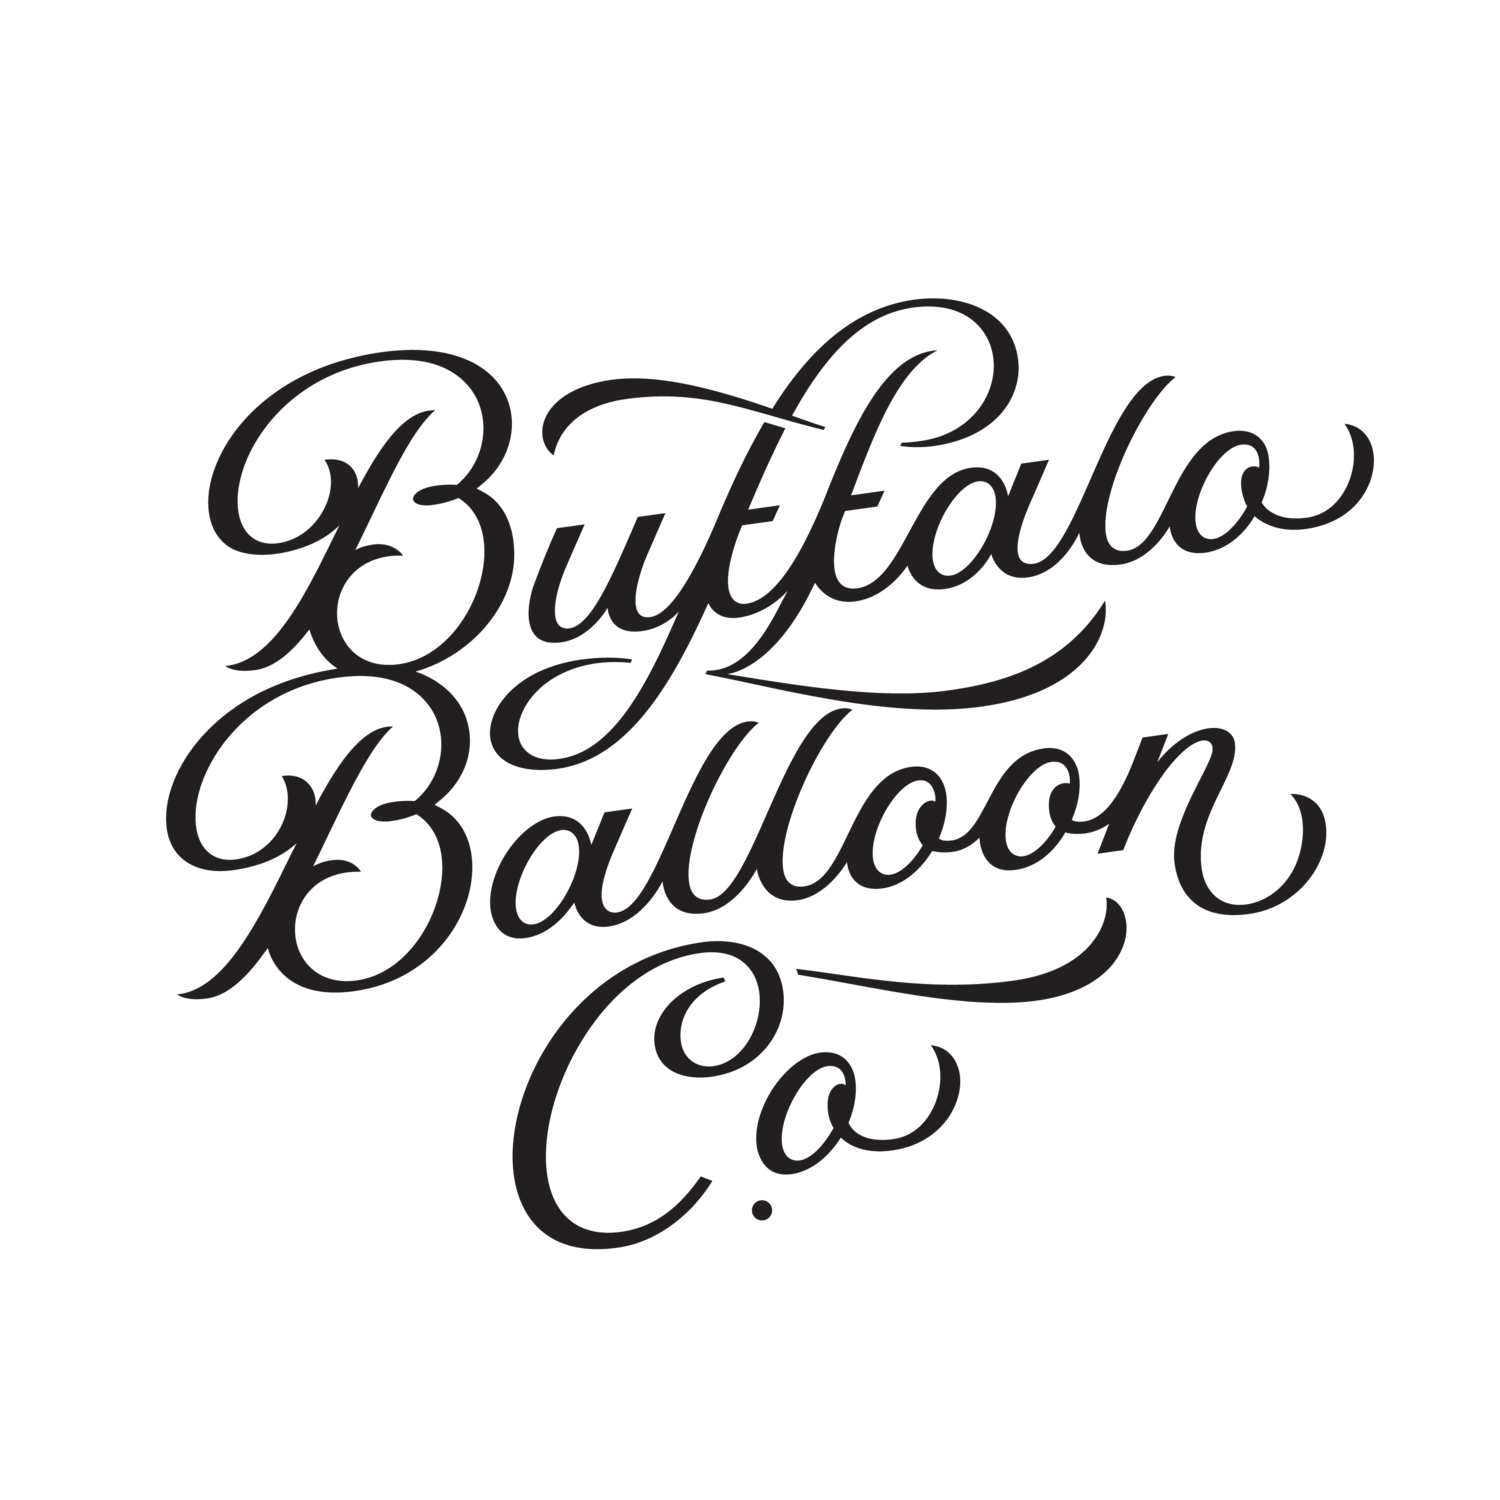 Buffalo Balloon Co.